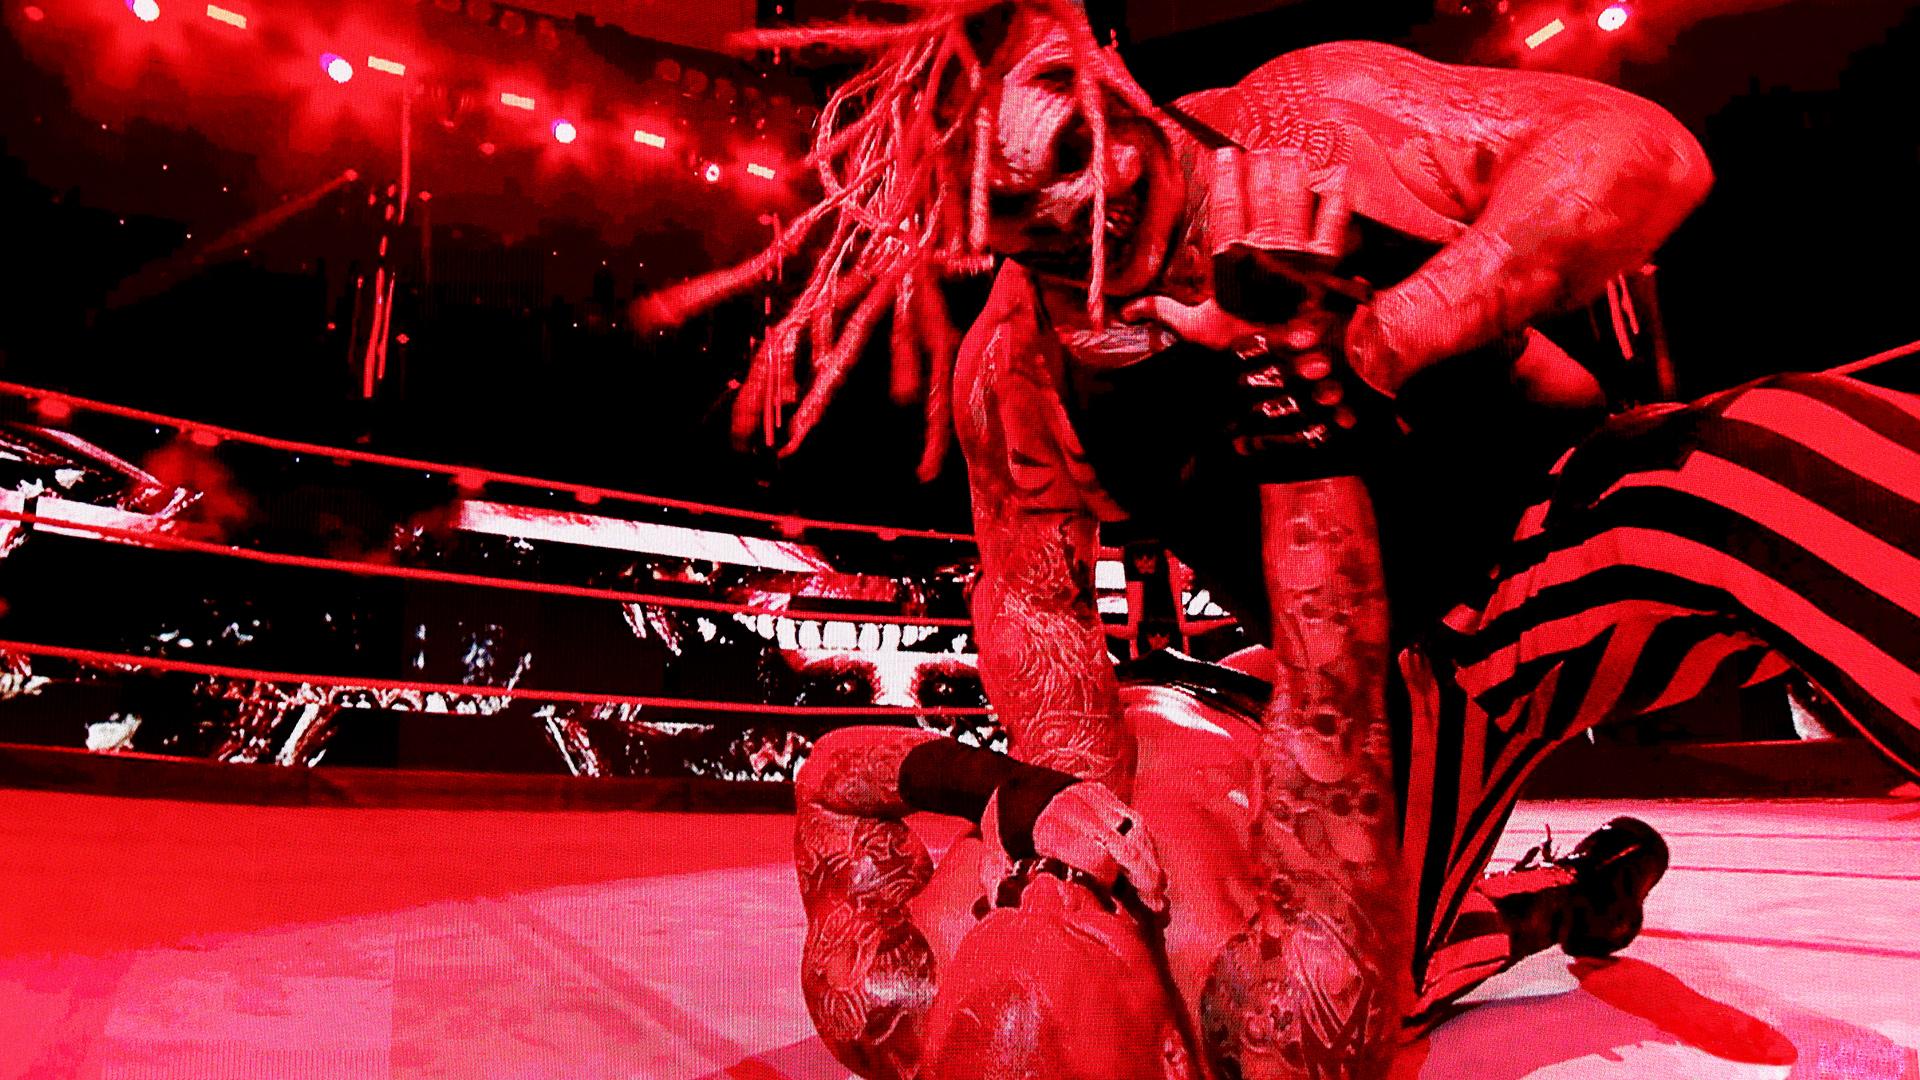 Randy Orton vs. Bray Wyatt